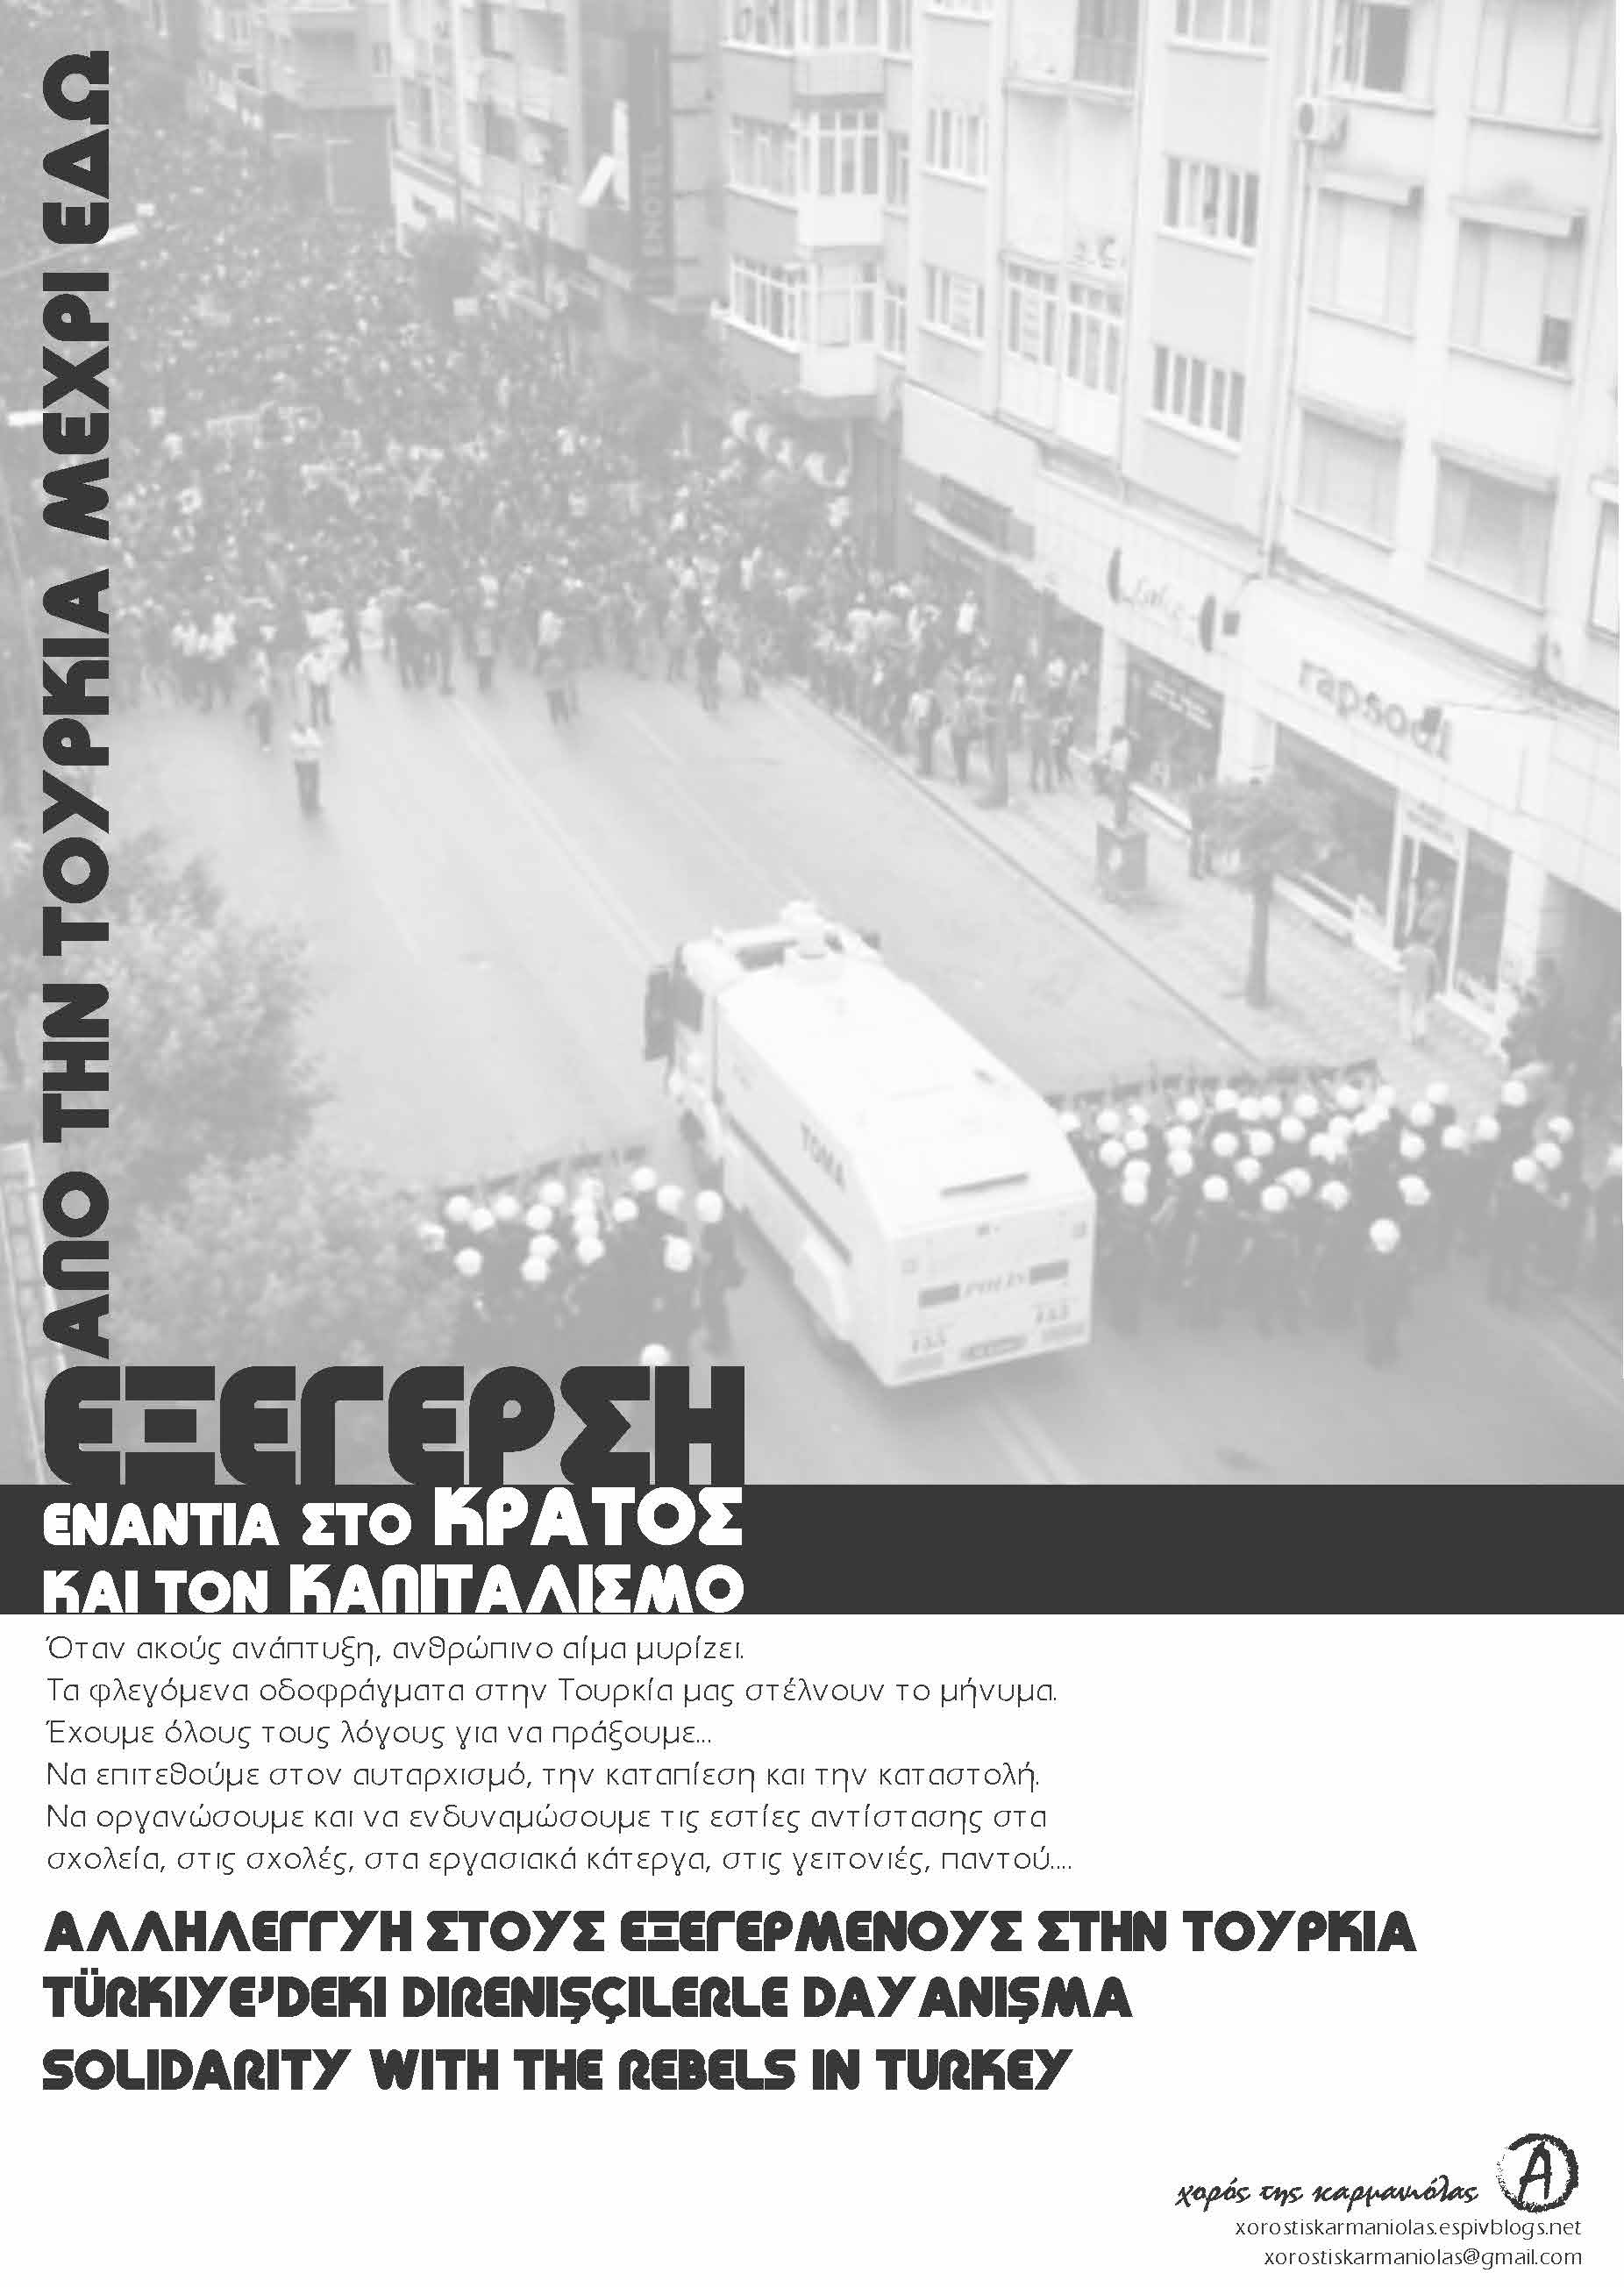 Χορός της Καρμανιόλας: Aλληλεγγύη στους εξεγερμένους στην Τουρκία [αφίσα]